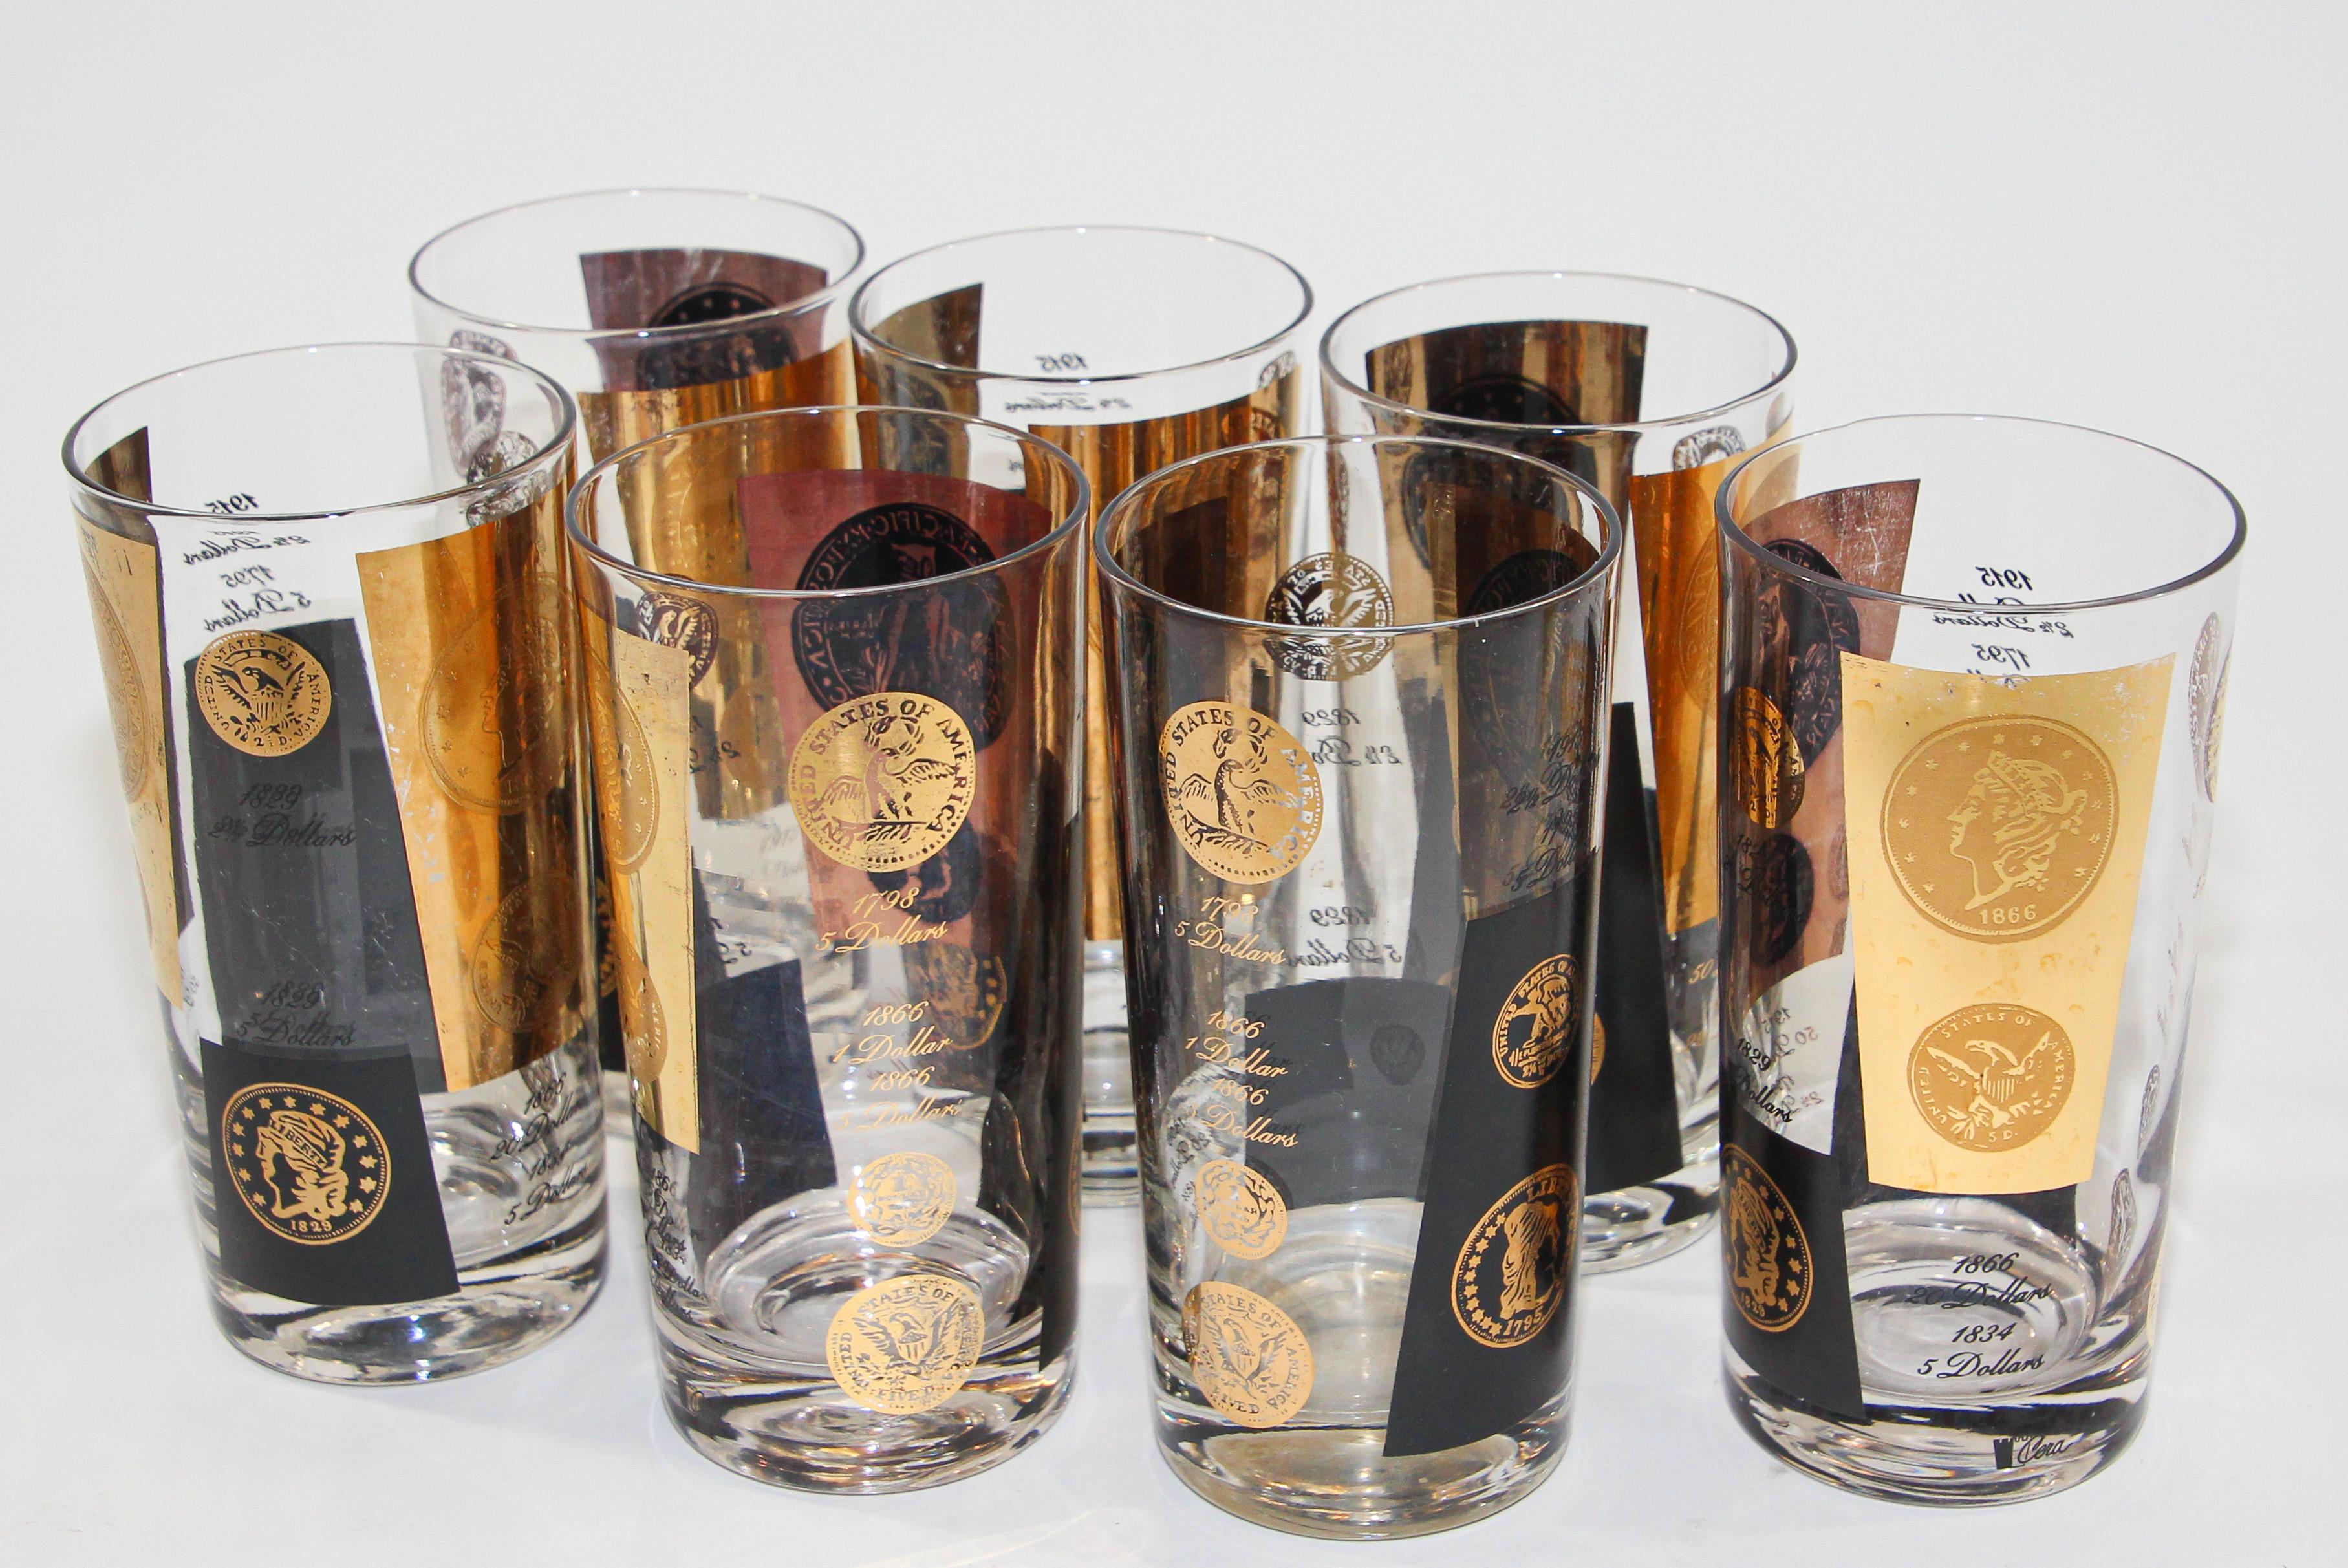 Midcentury Vintage Set von 7 Stück 5-Unzen-Rocks Gläser 1960er Jahre Gold gedruckt Präsidentschafts-Münzen.
Cera 22-karätiges Gold signiert Glaswaren Barware.
Gold und schwarzes Münzdesign.
Die Gläser zeigen 